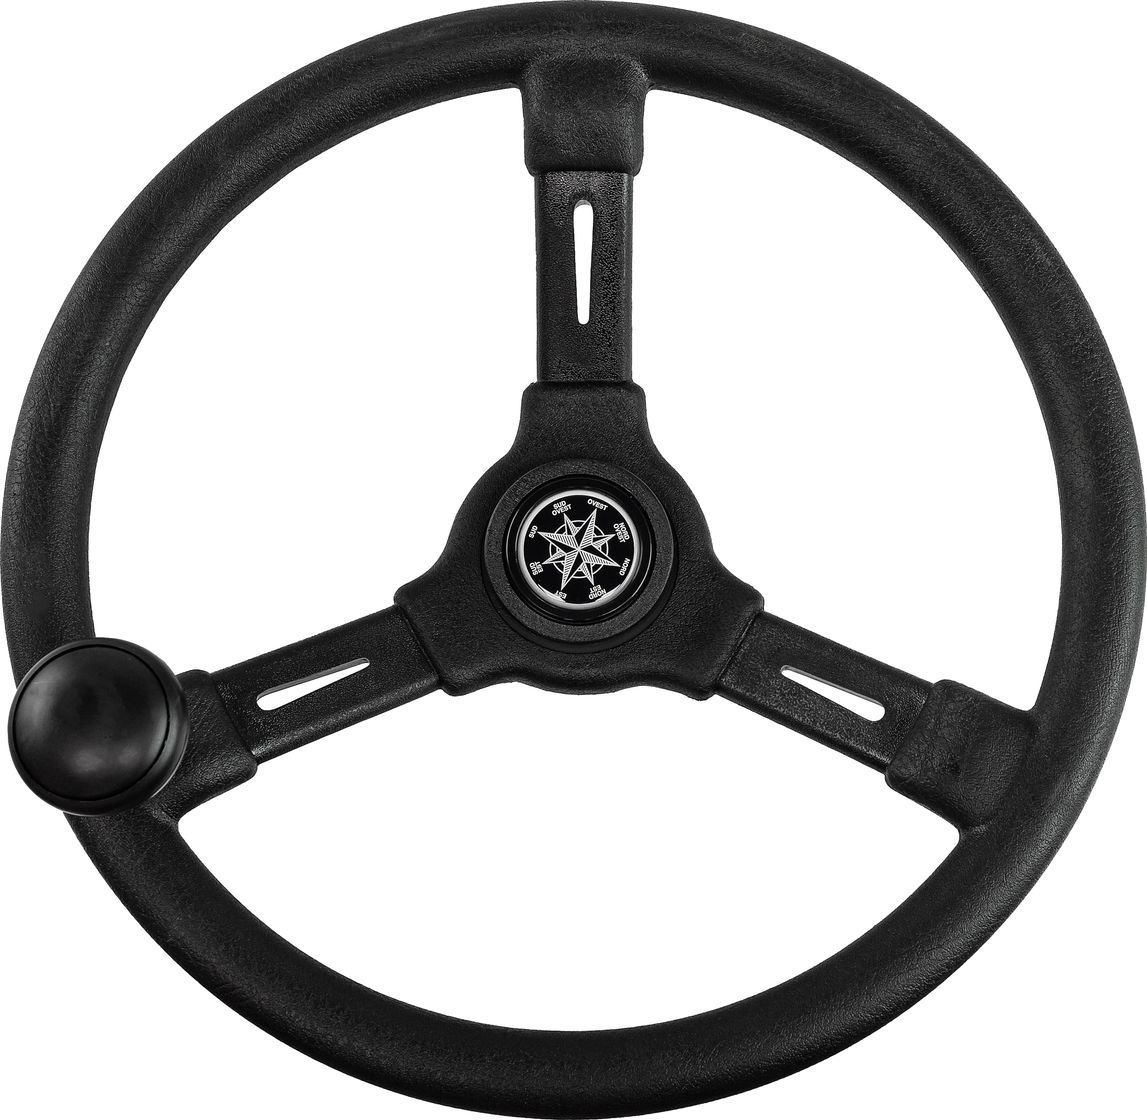 Рулевое колесо RIVIERA черный обод и спицы д. 350 мм со спинером VN8250-01 гарнитура hama nhs p100 черный 2м накладные шейный обод 00139920 с микрофоном